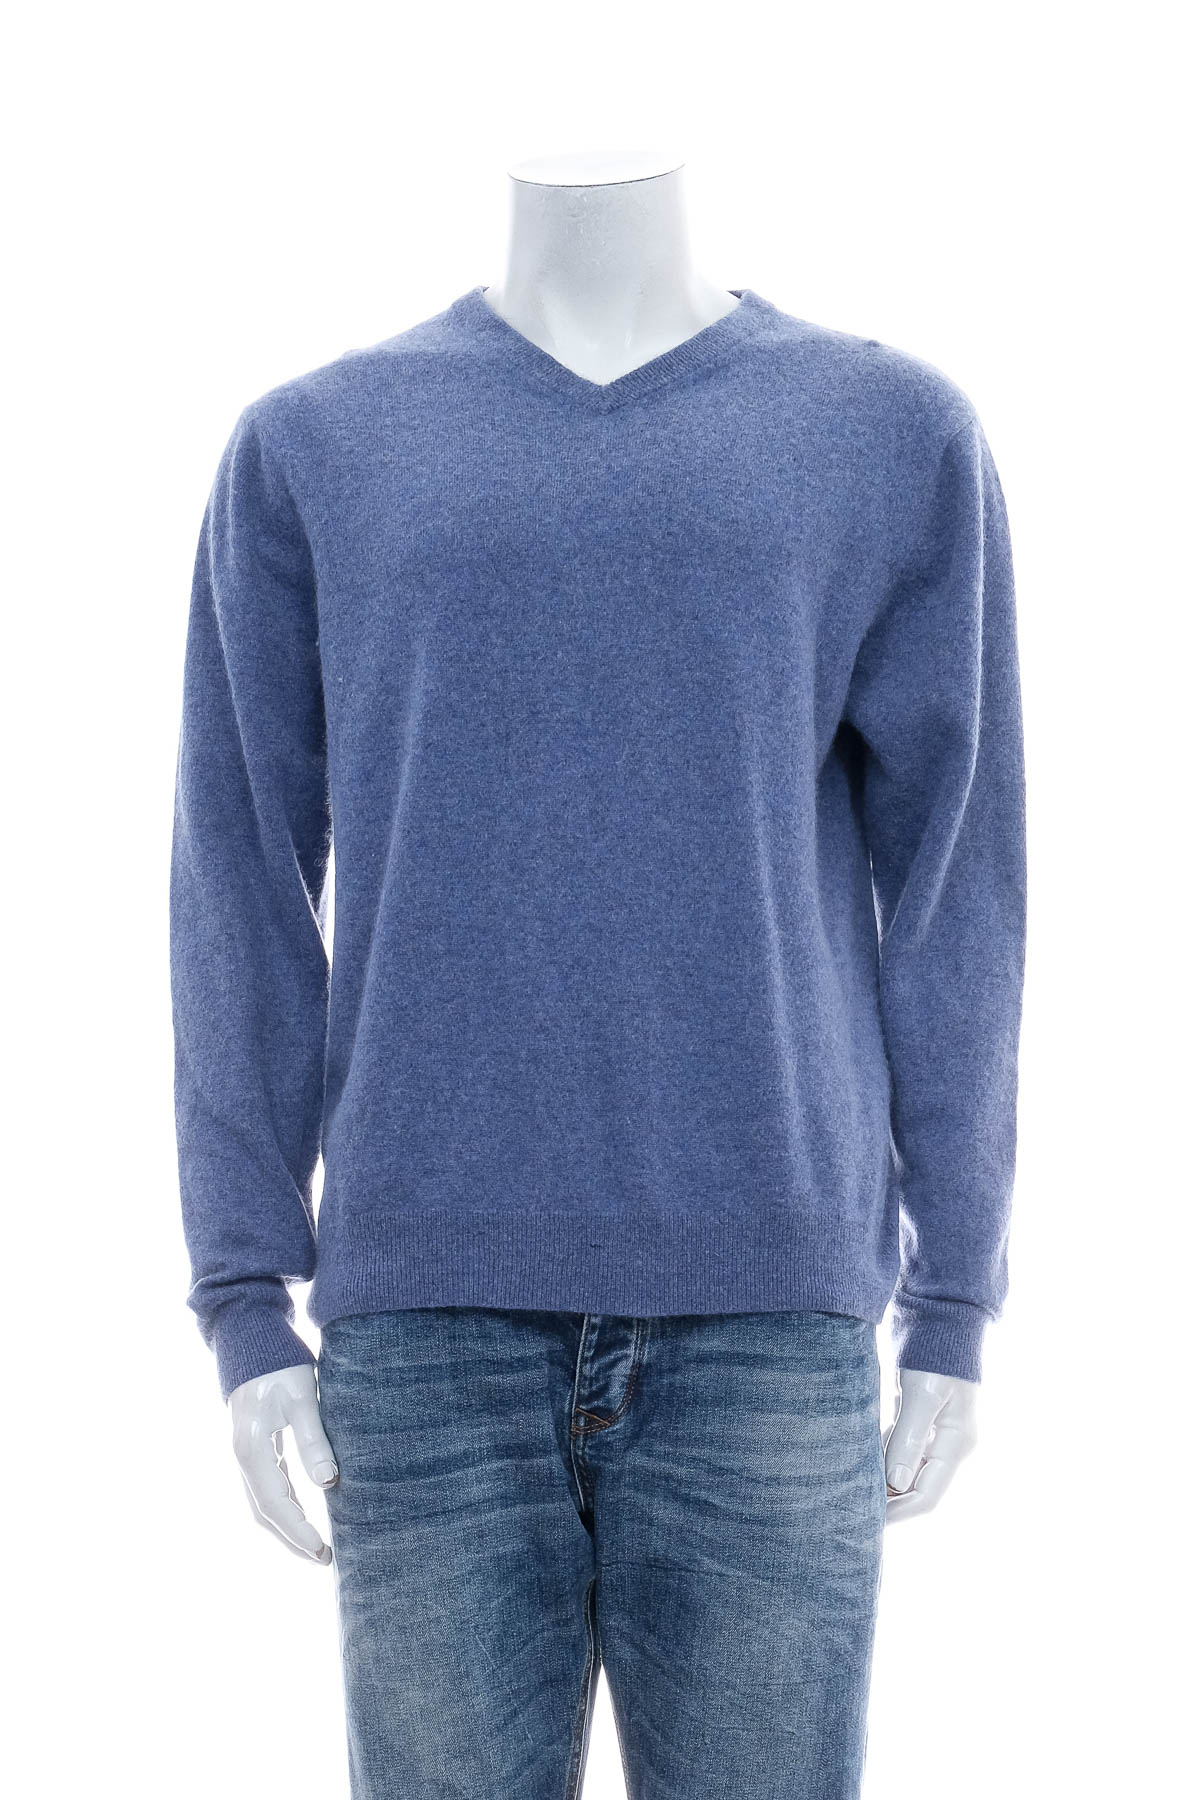 Men's sweater - Bexleys - 0